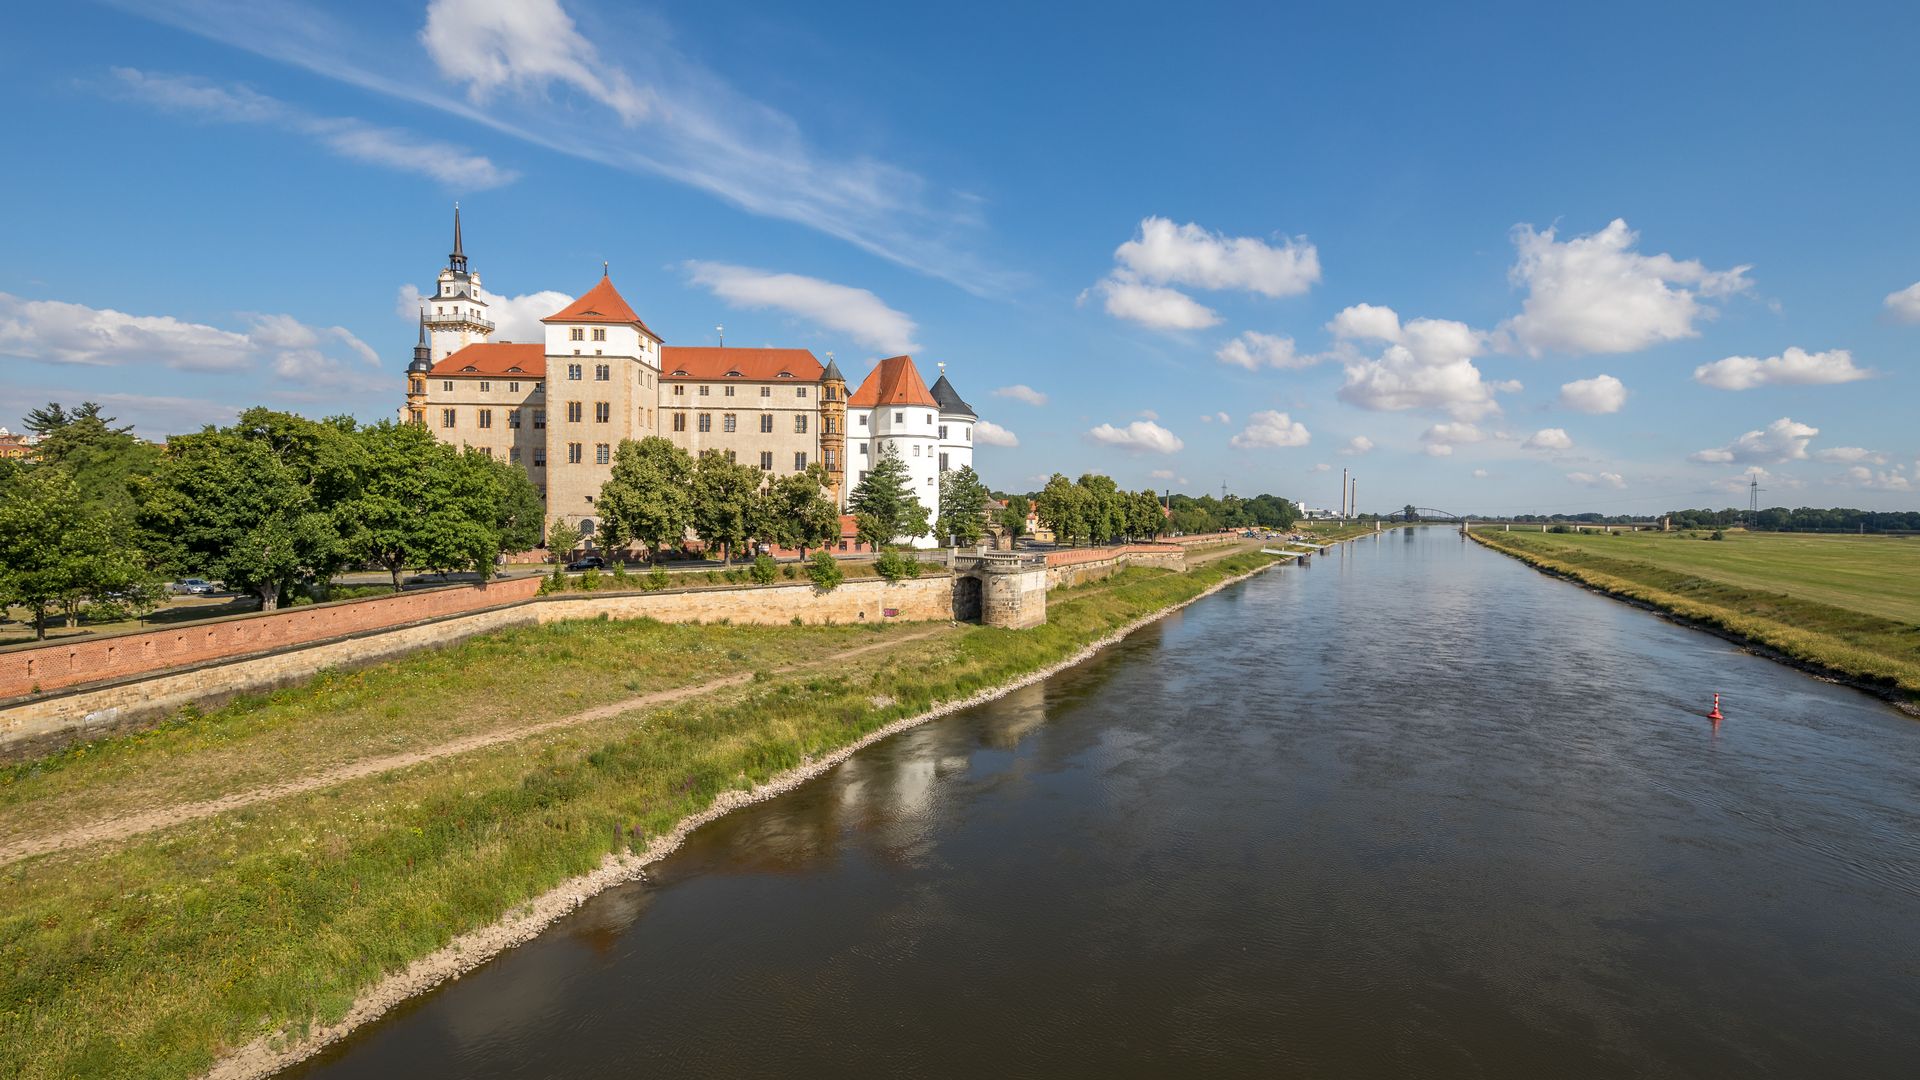 Le château d’Hartenfels, à Torgau, se trouve sur les rives de l'Elbe.